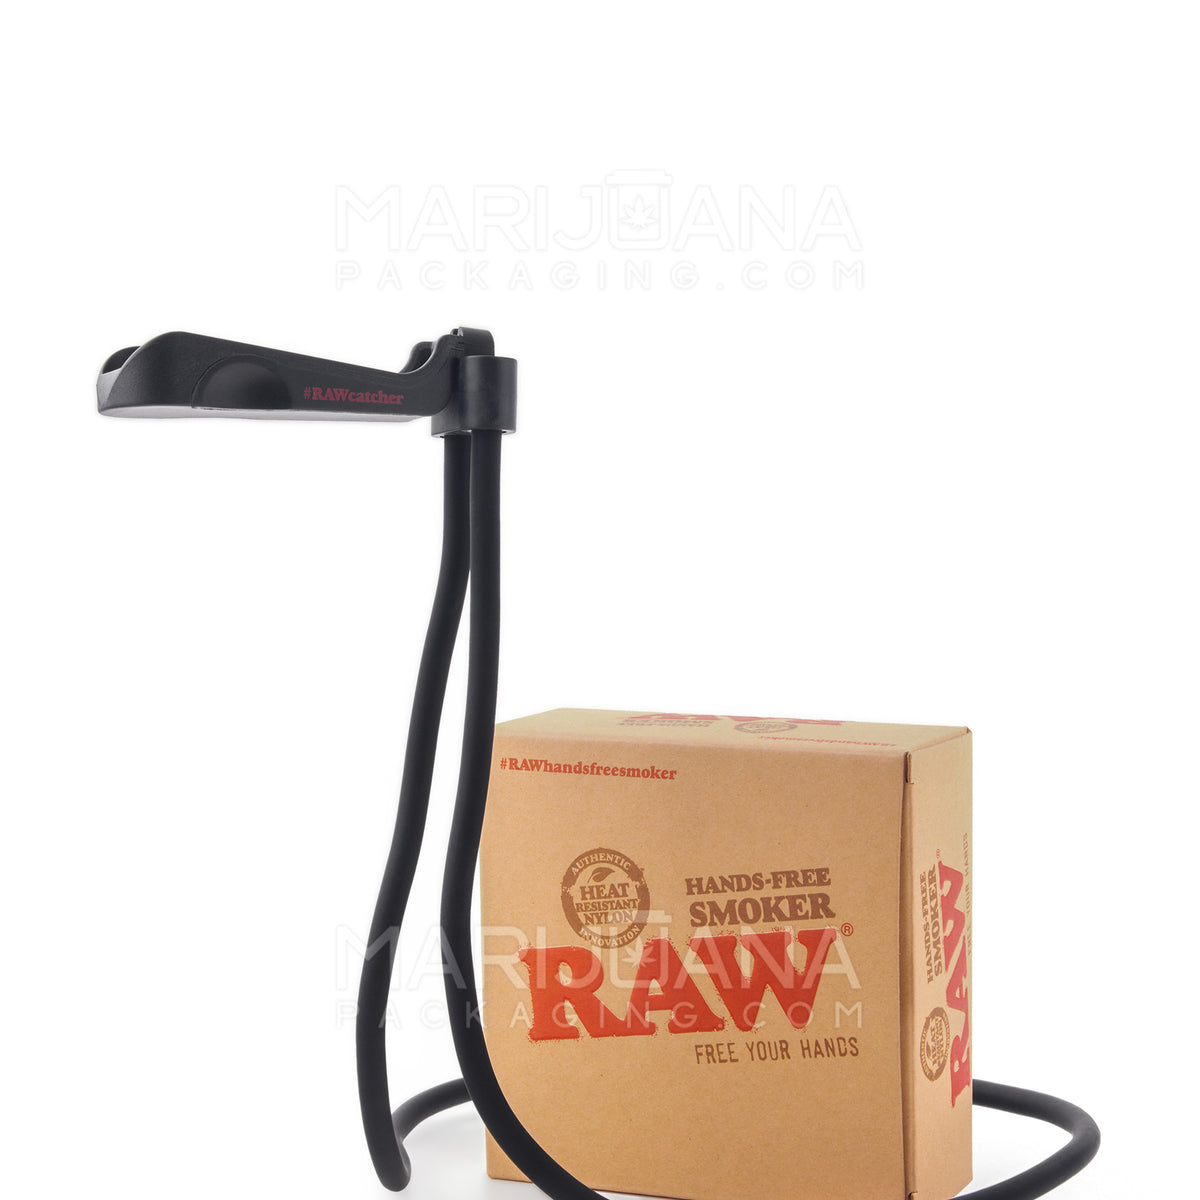 Raw hands free smoker – Trus420